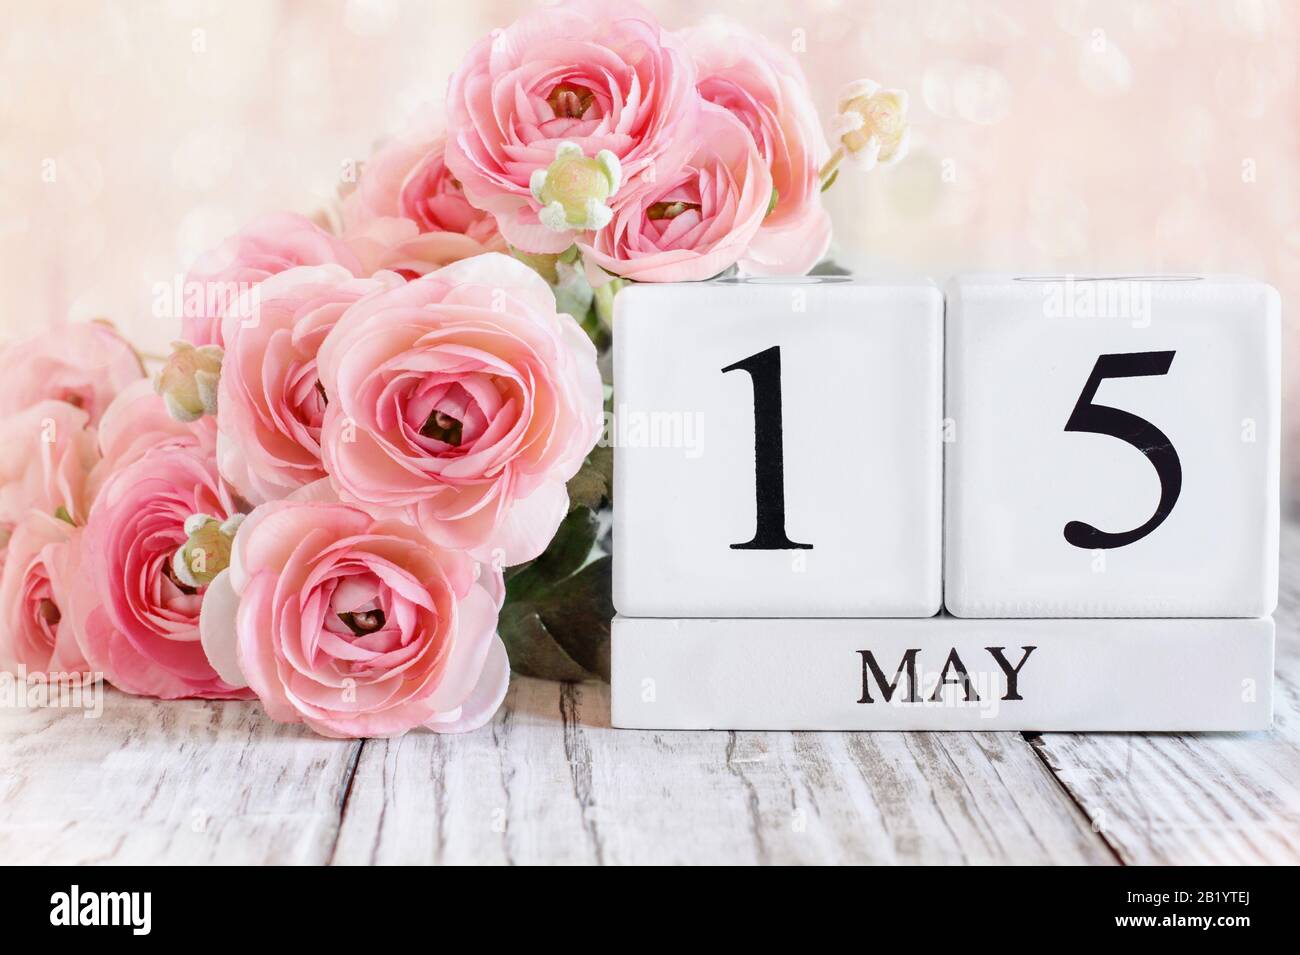 Blocs calendrier en bois blanc avec la date du 15 mai. Foyer sélectif avec ranunculus rose en arrière-plan sur une table en bois. Banque D'Images